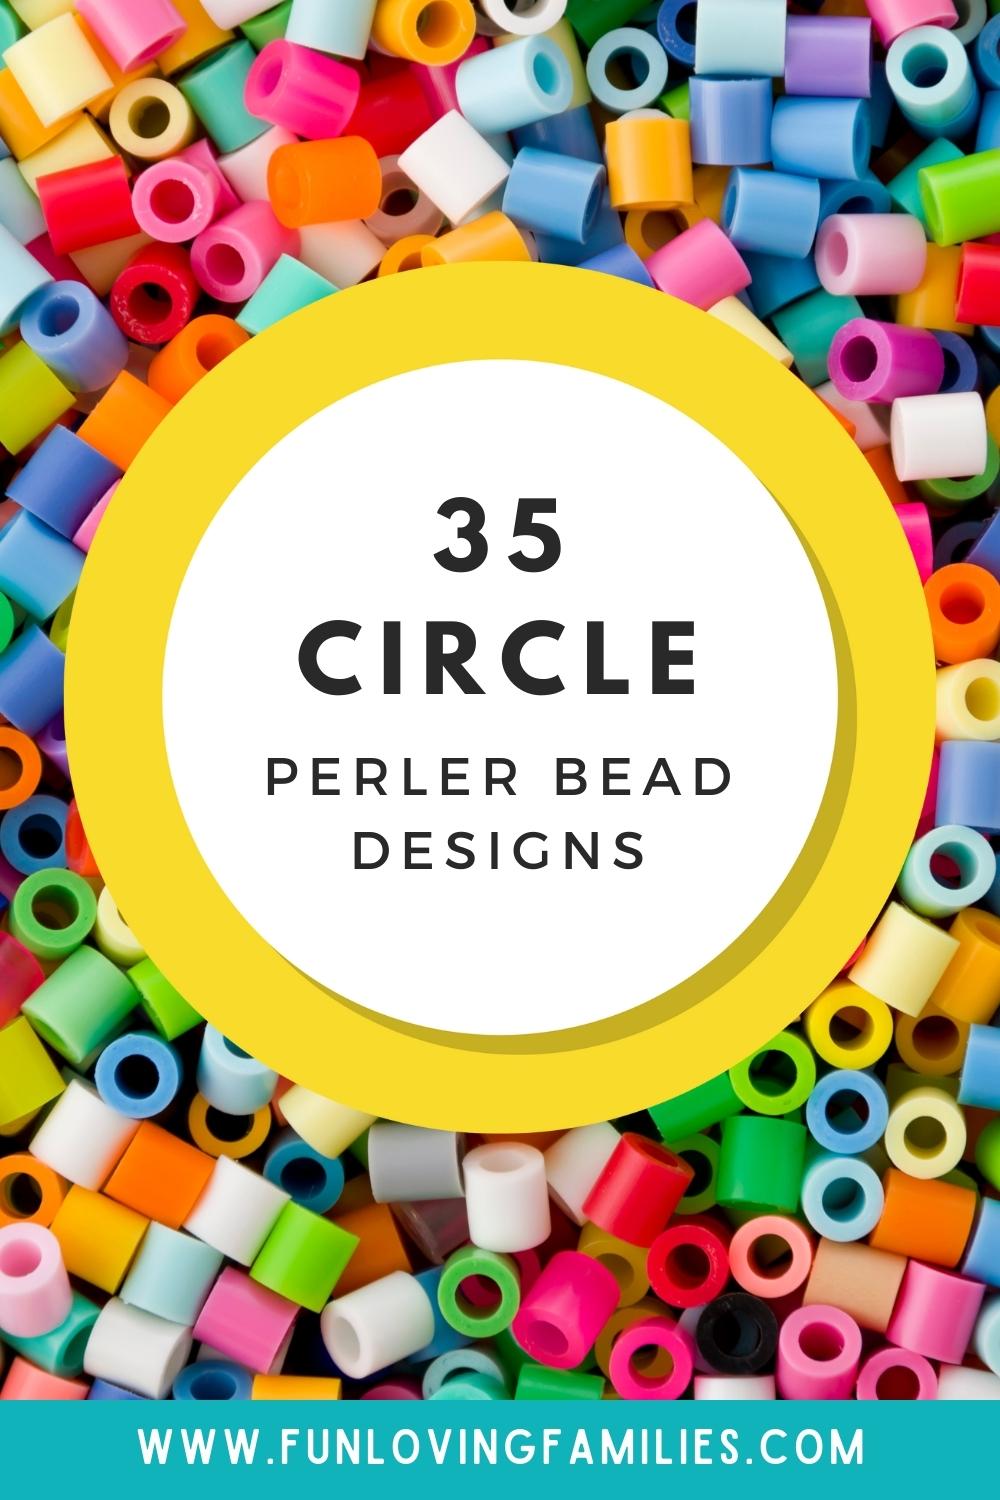 Circle Perler Bead Patterns pin image